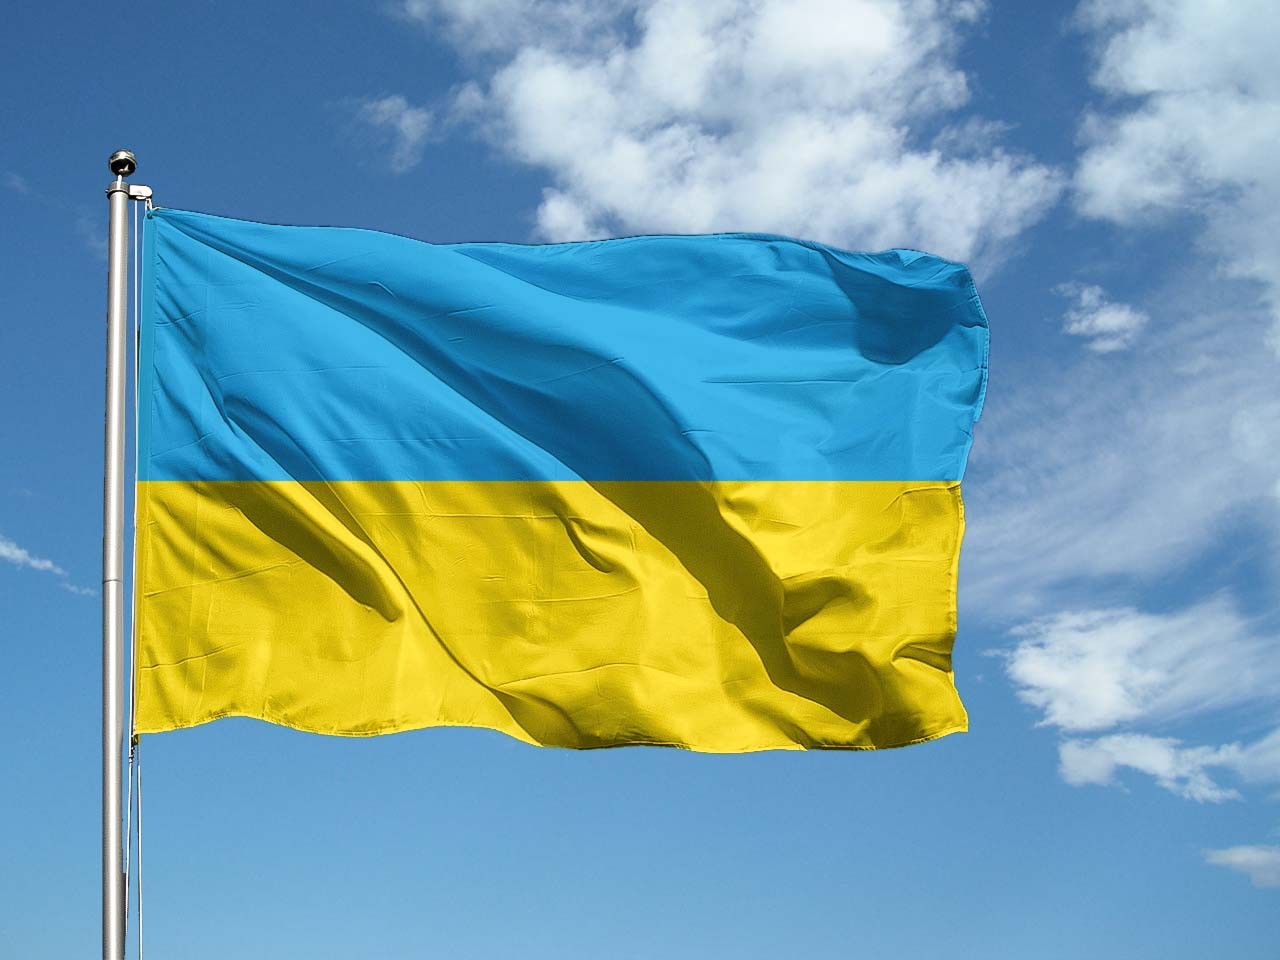 Emergenza Ucraina – Informazioni in continuo aggiornamento e notizie utili per aiutare